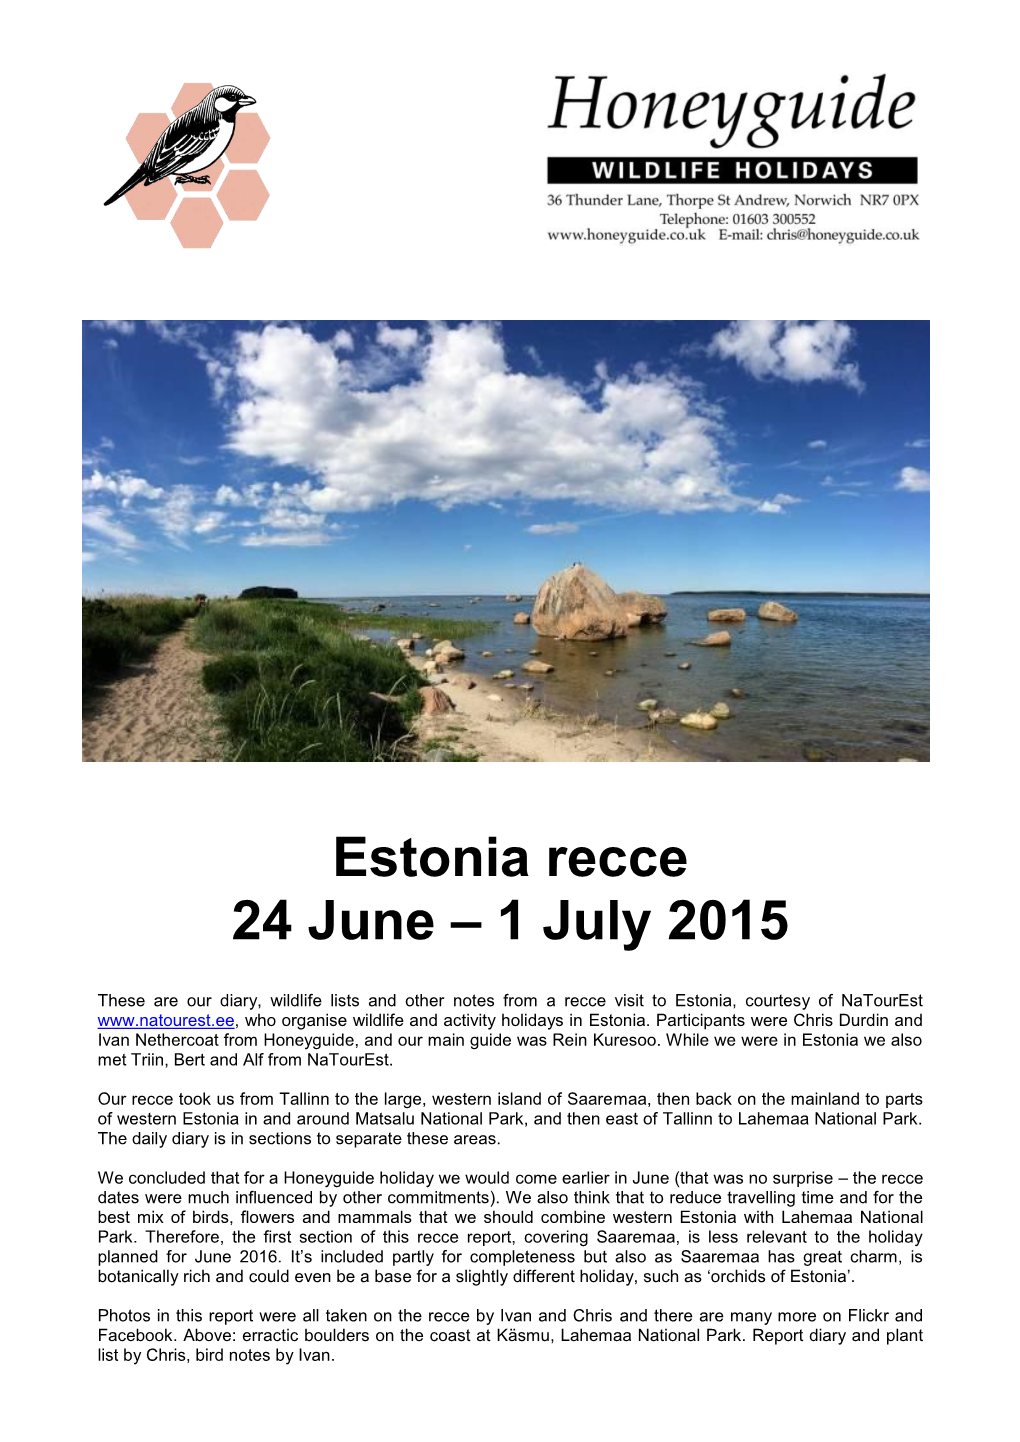 Estonia Recce 24 June – 1 July 2015